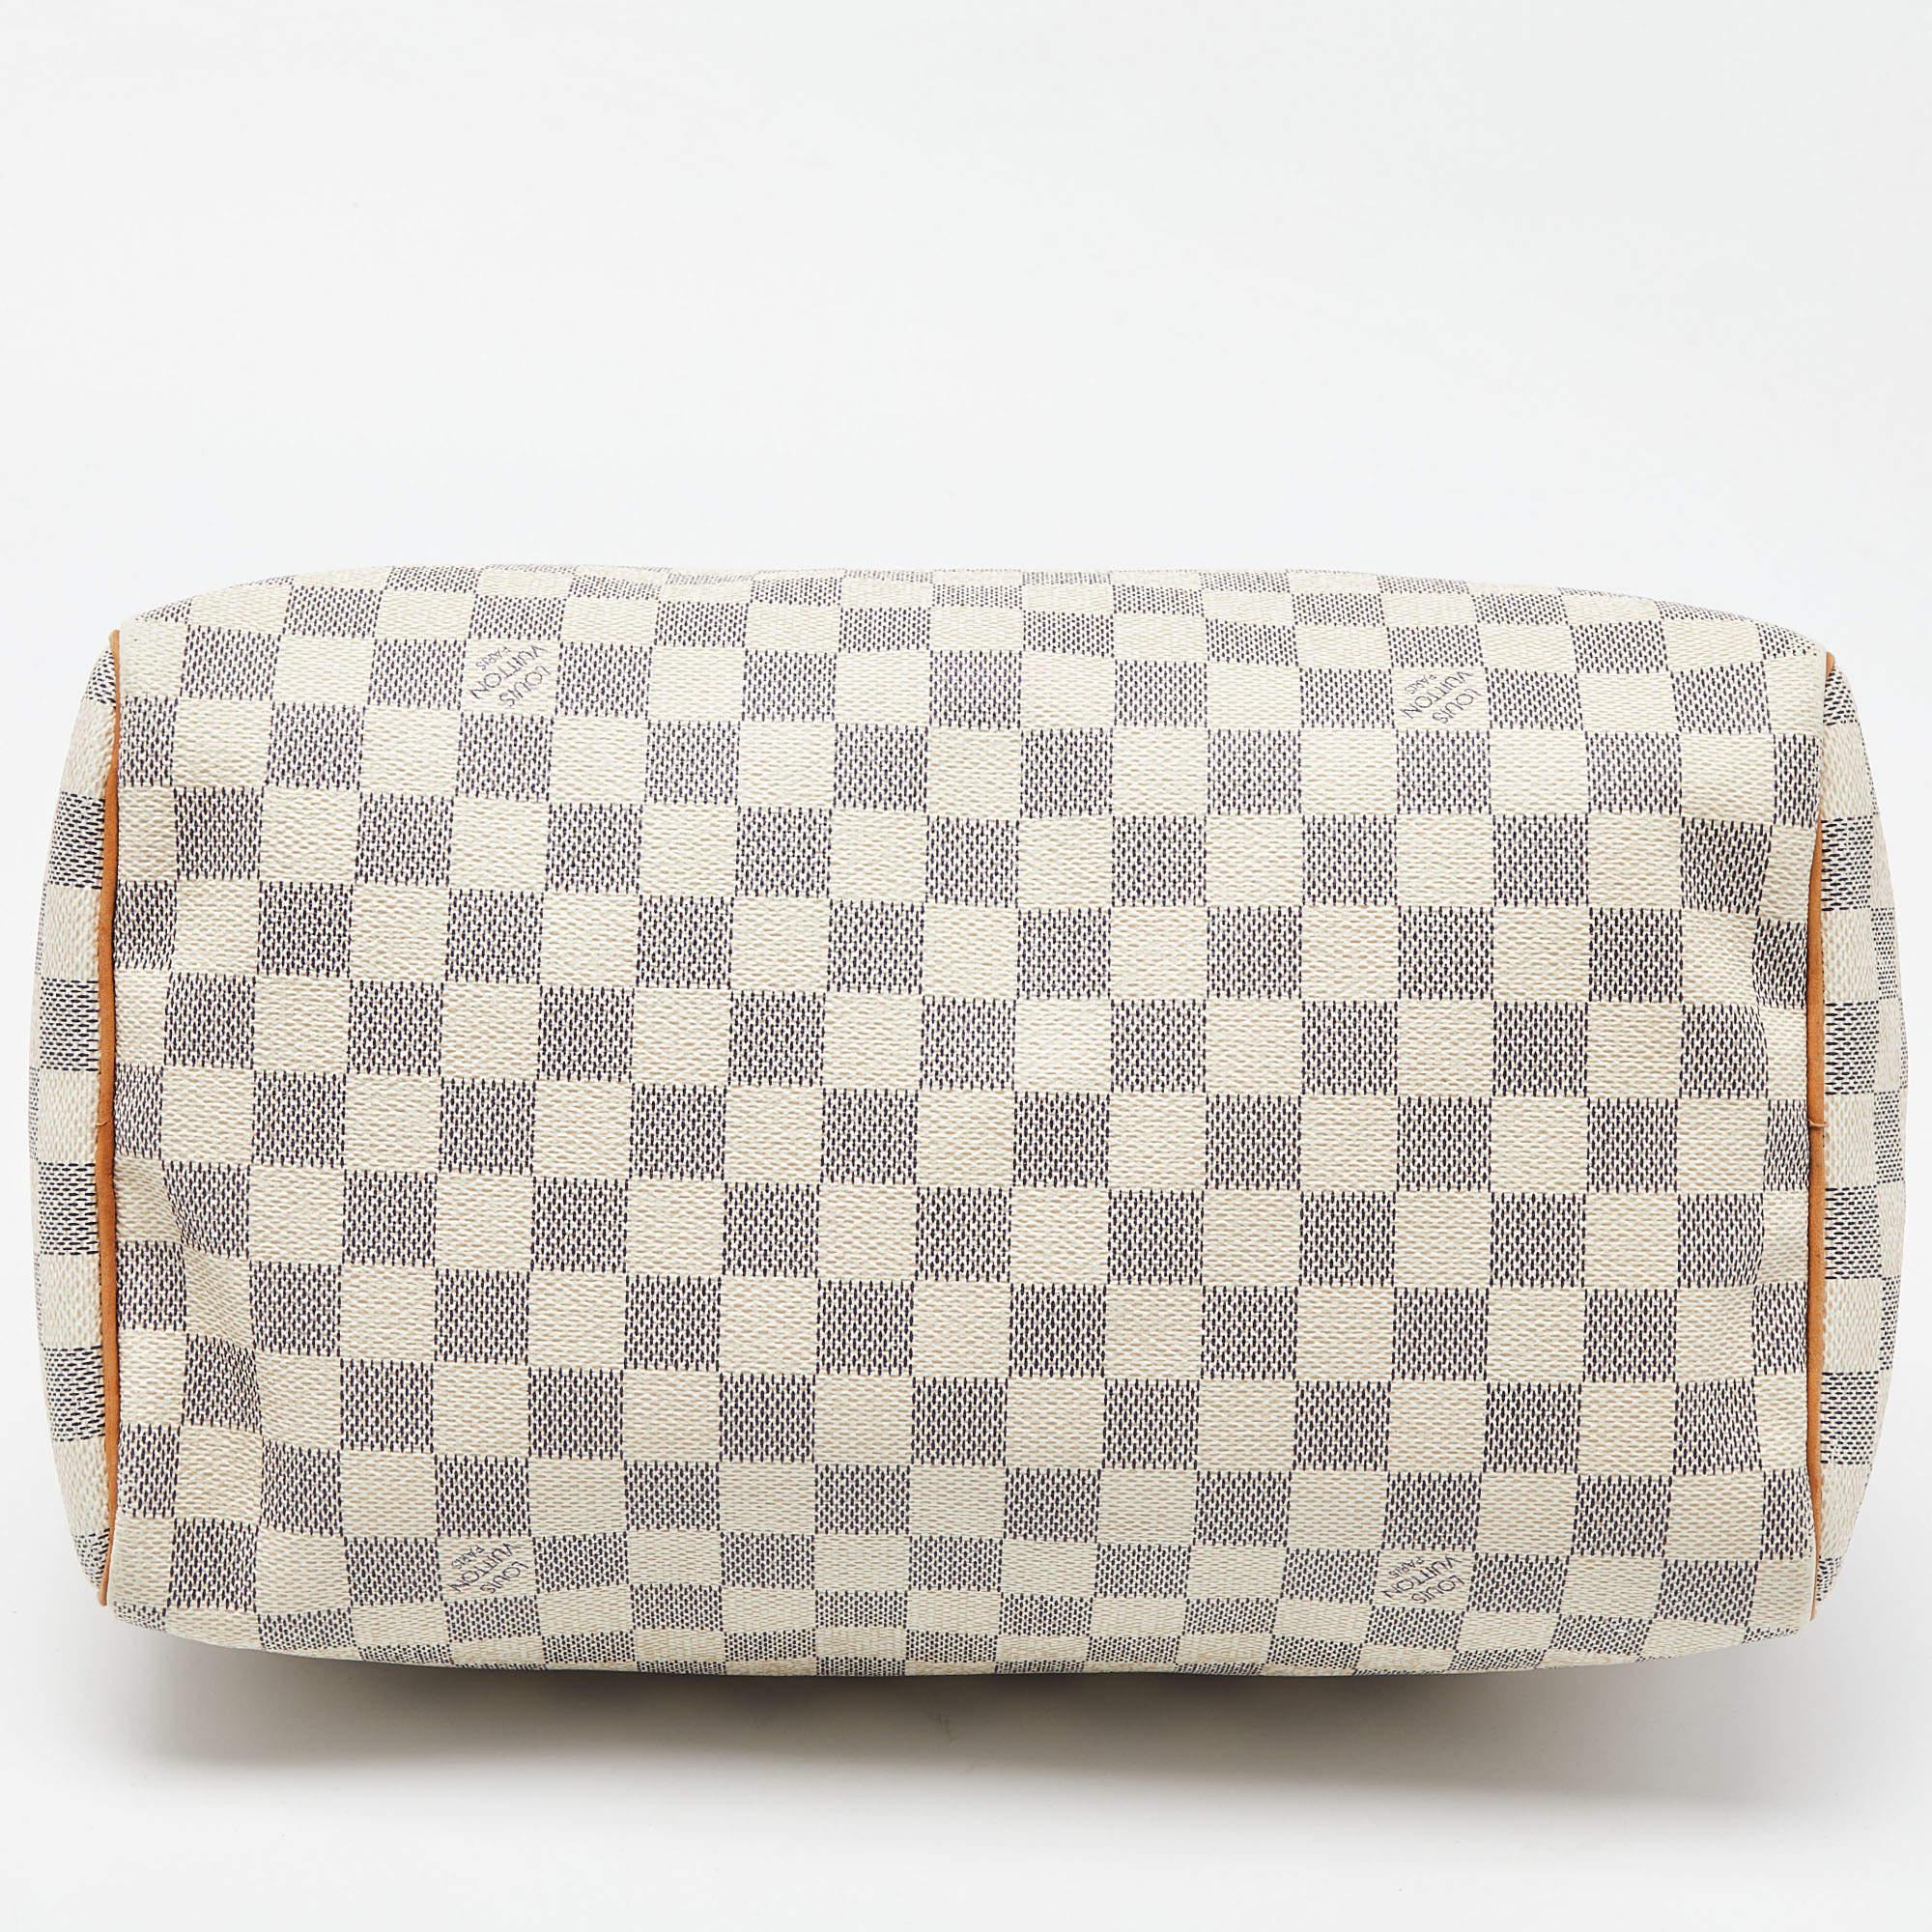 Louis Vuitton Damier Azur Canvas Speedy 30 Bag For Sale 3